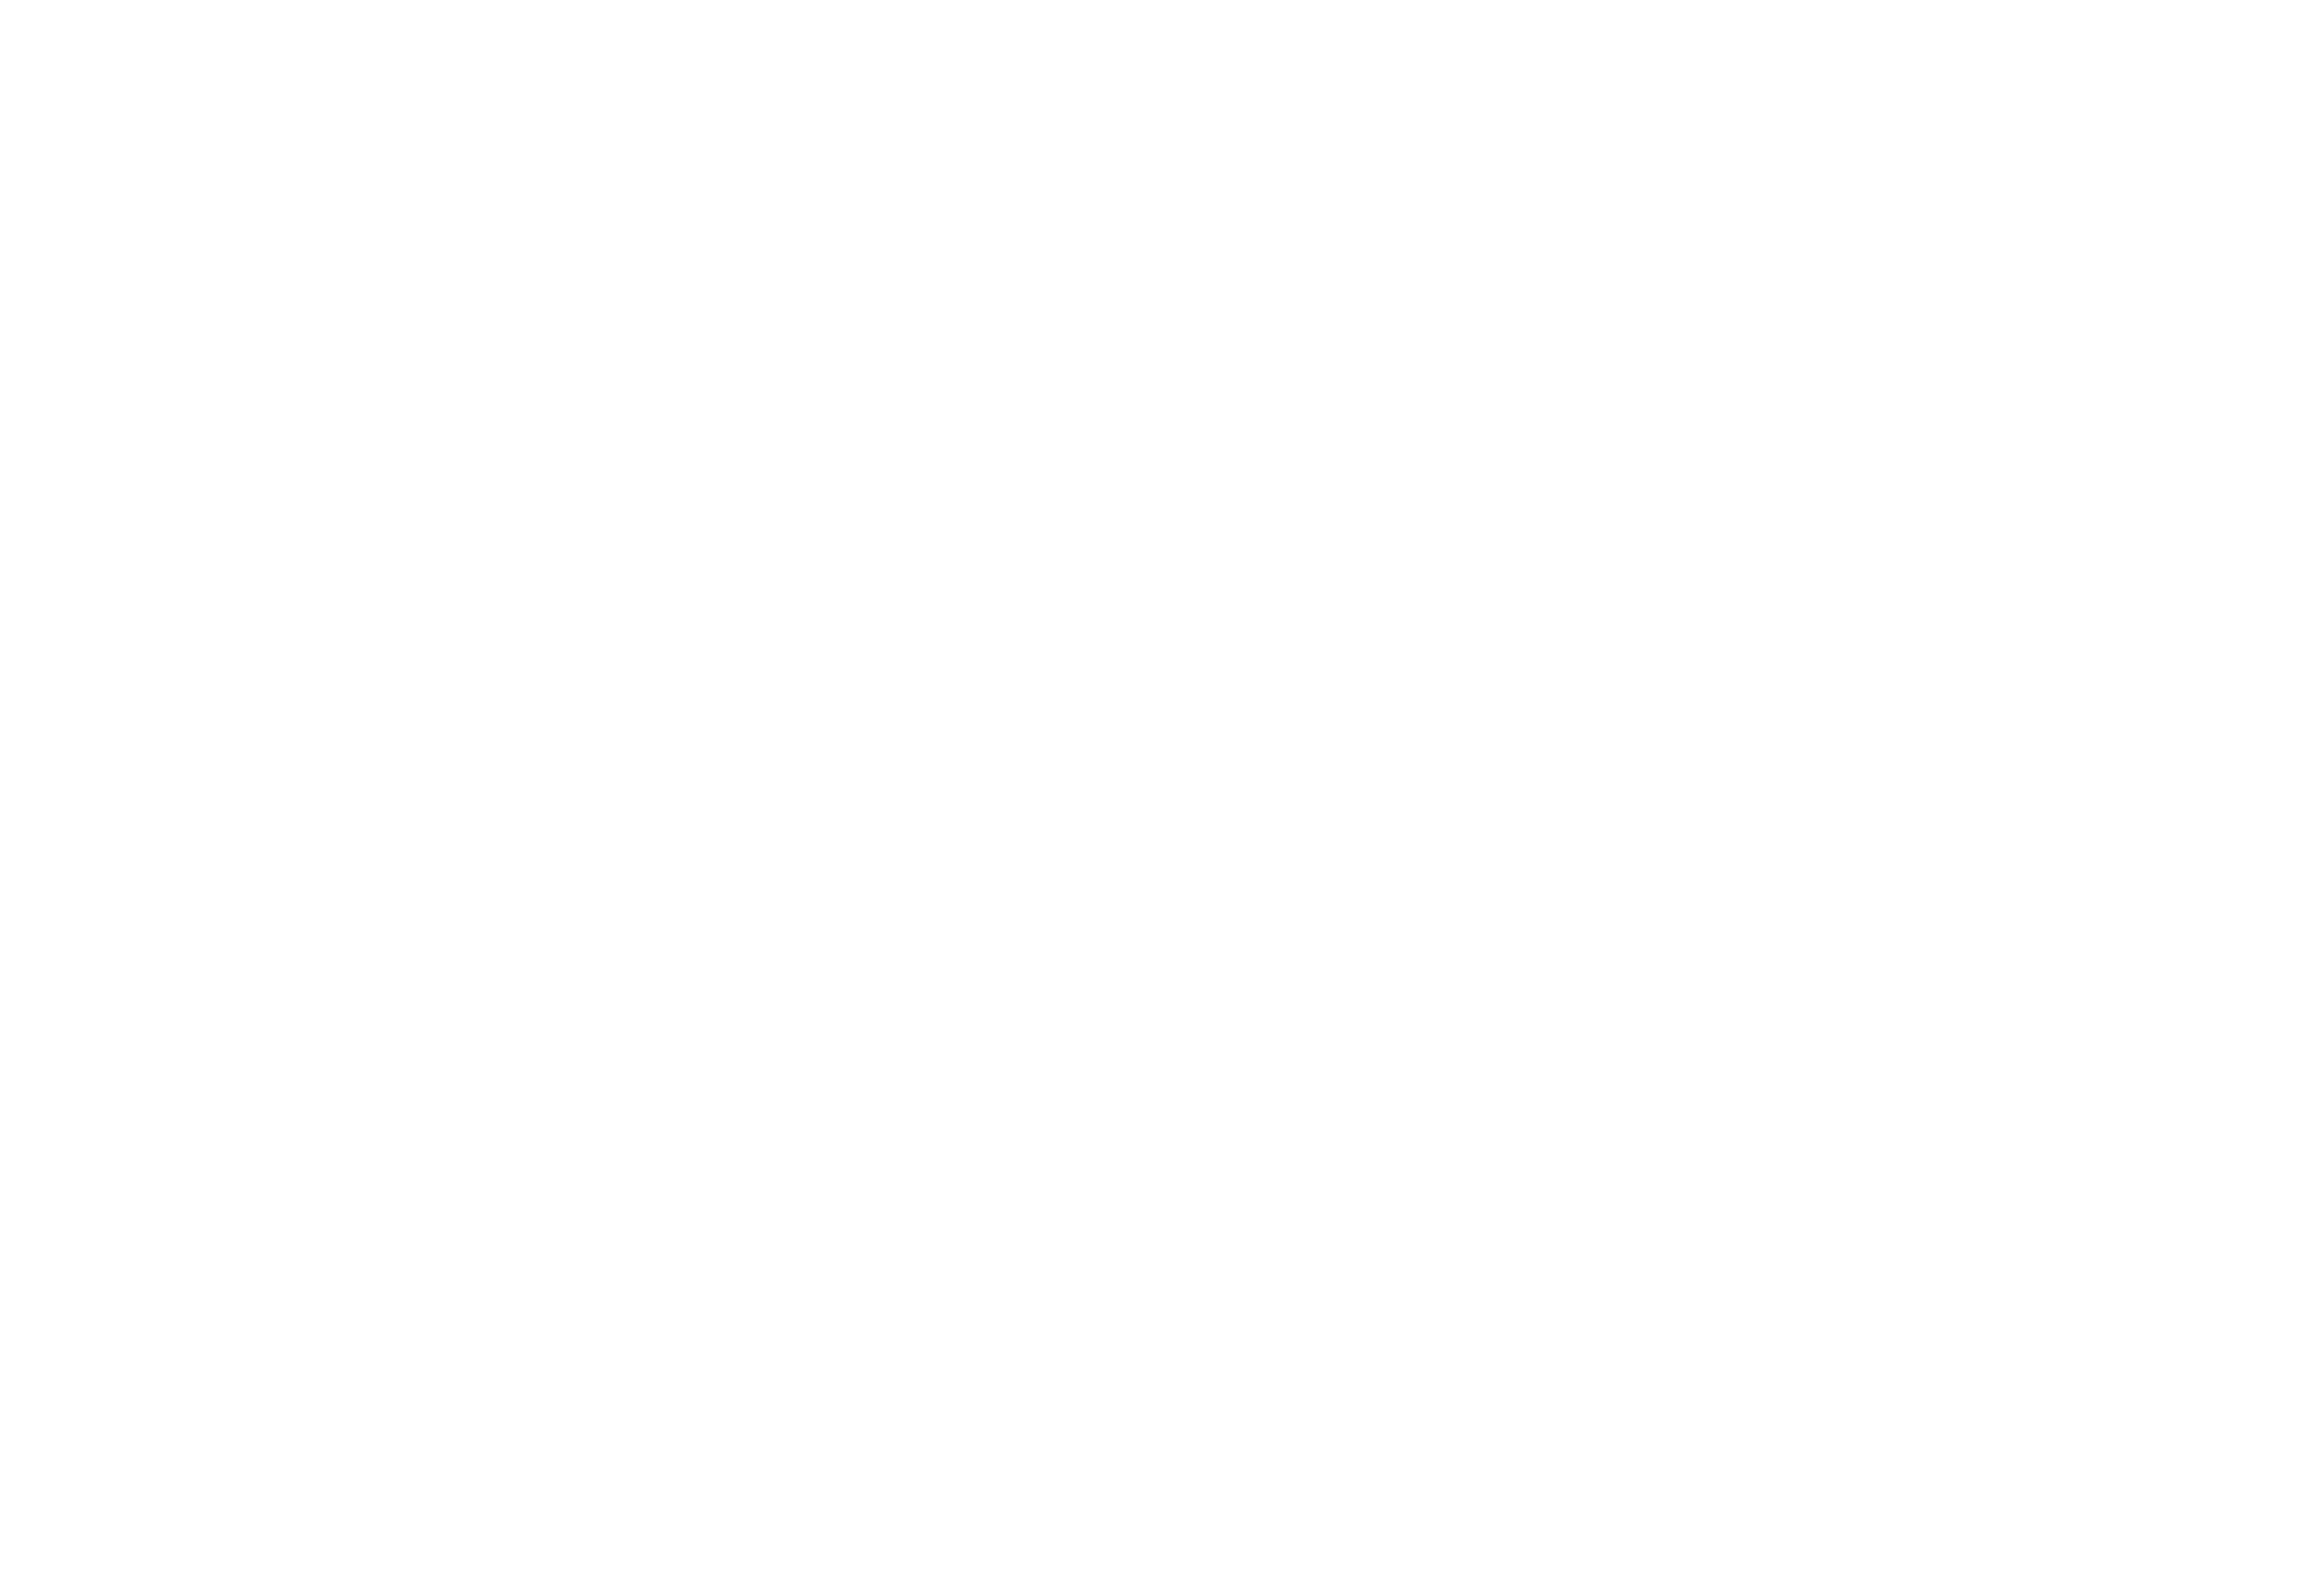 Club de Golf Le Mirage